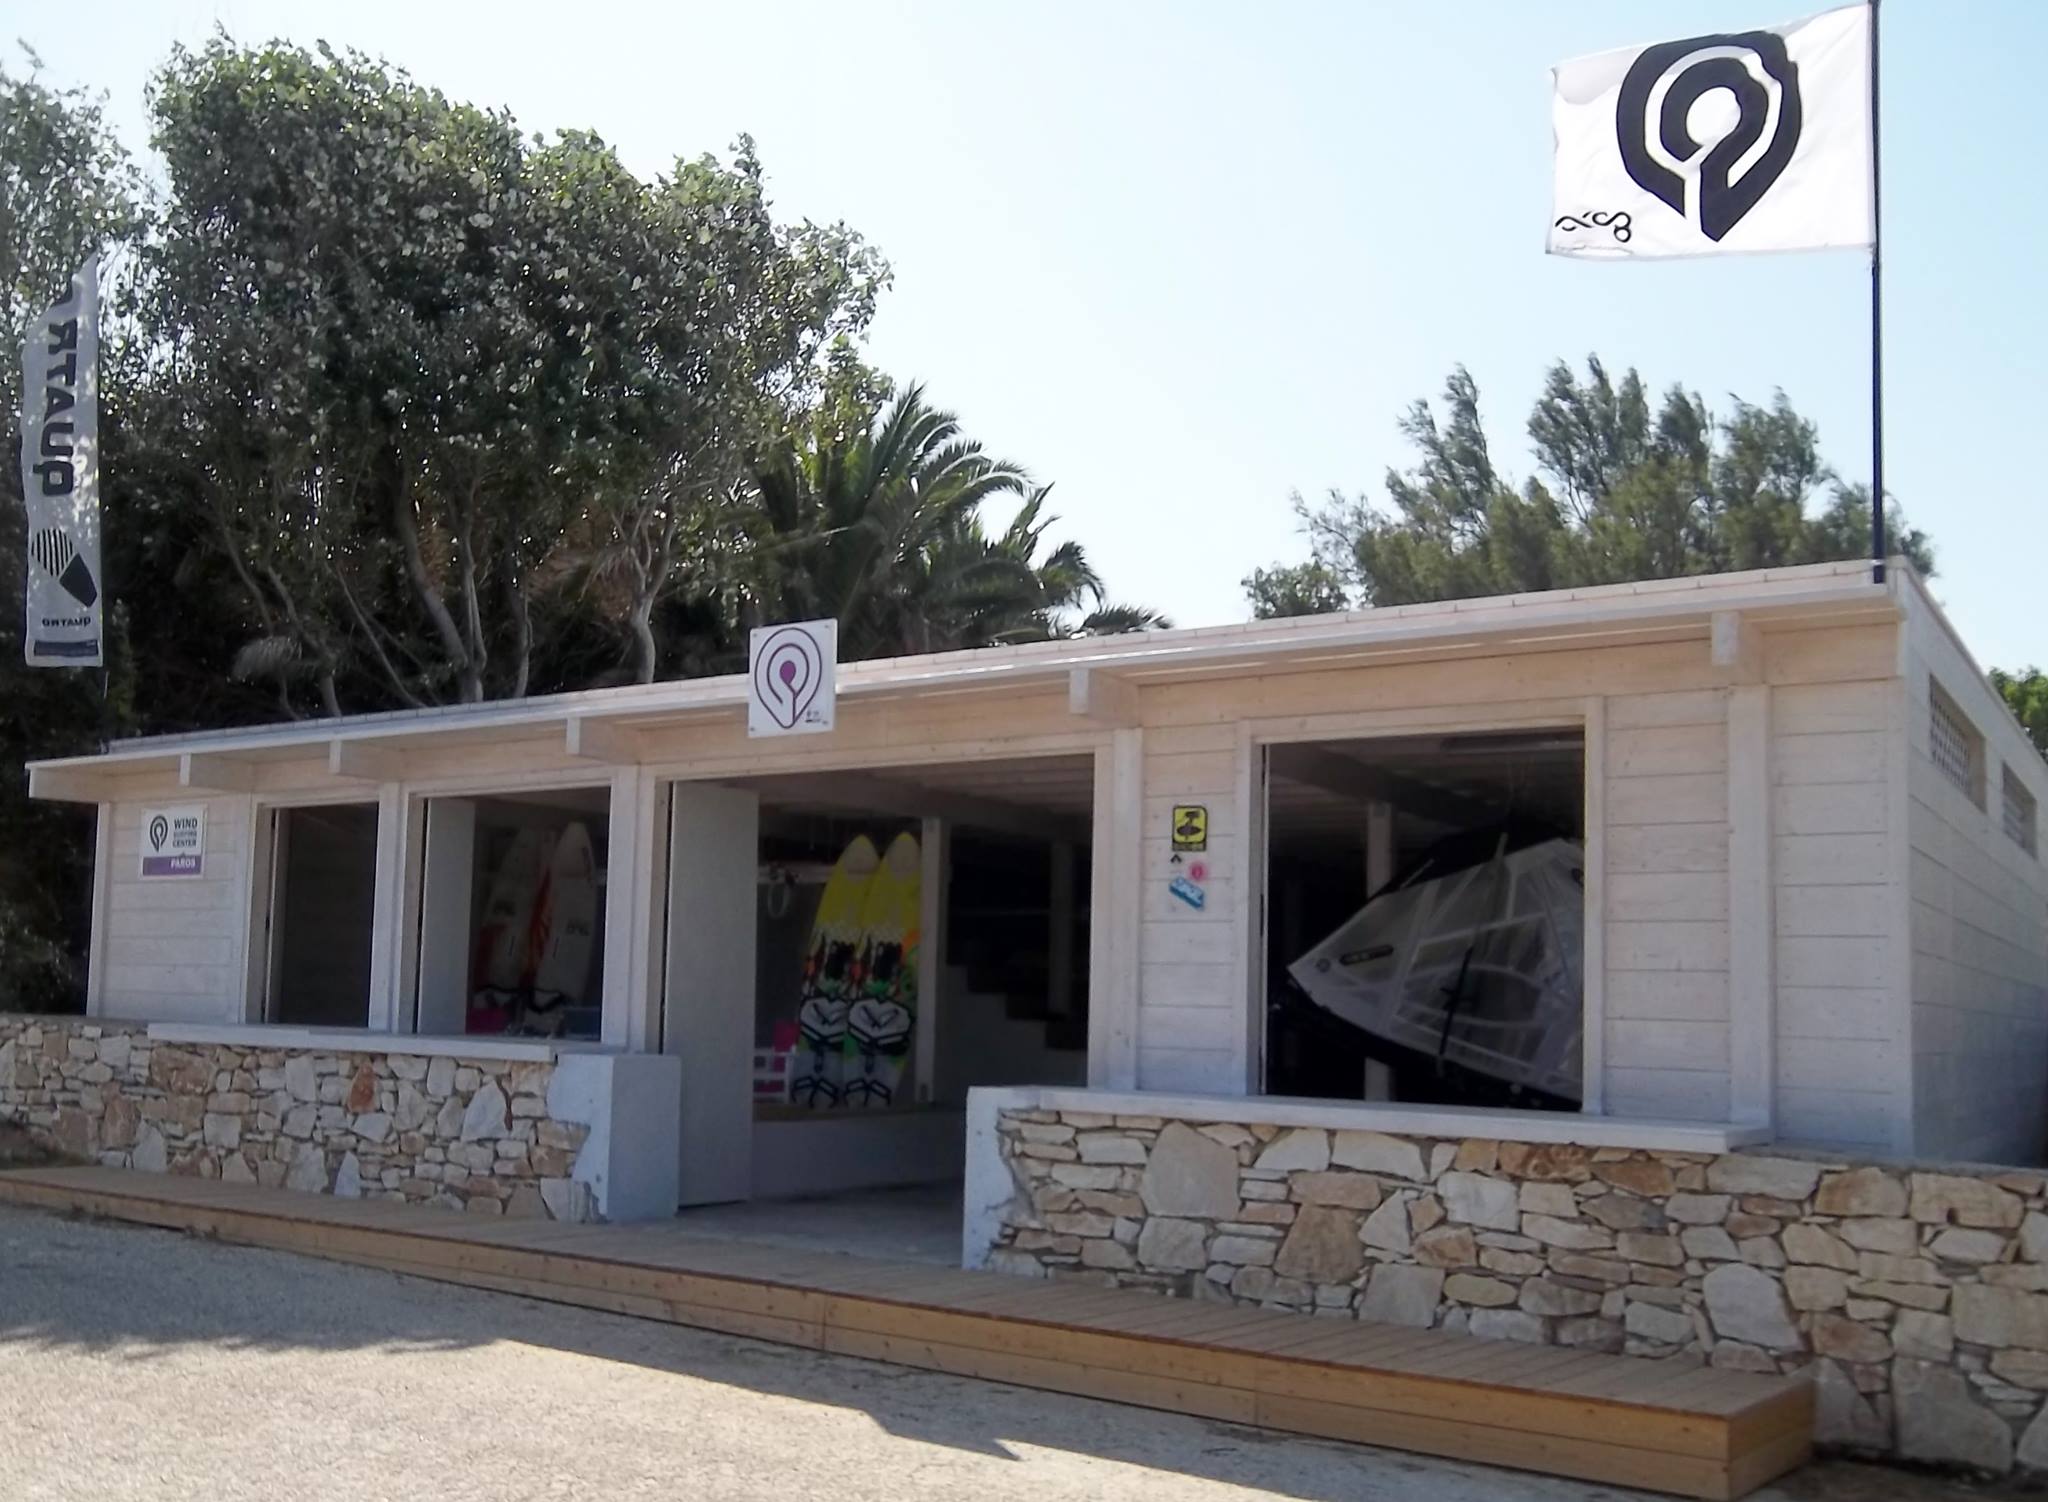 Goya windsurfing center Paros - station